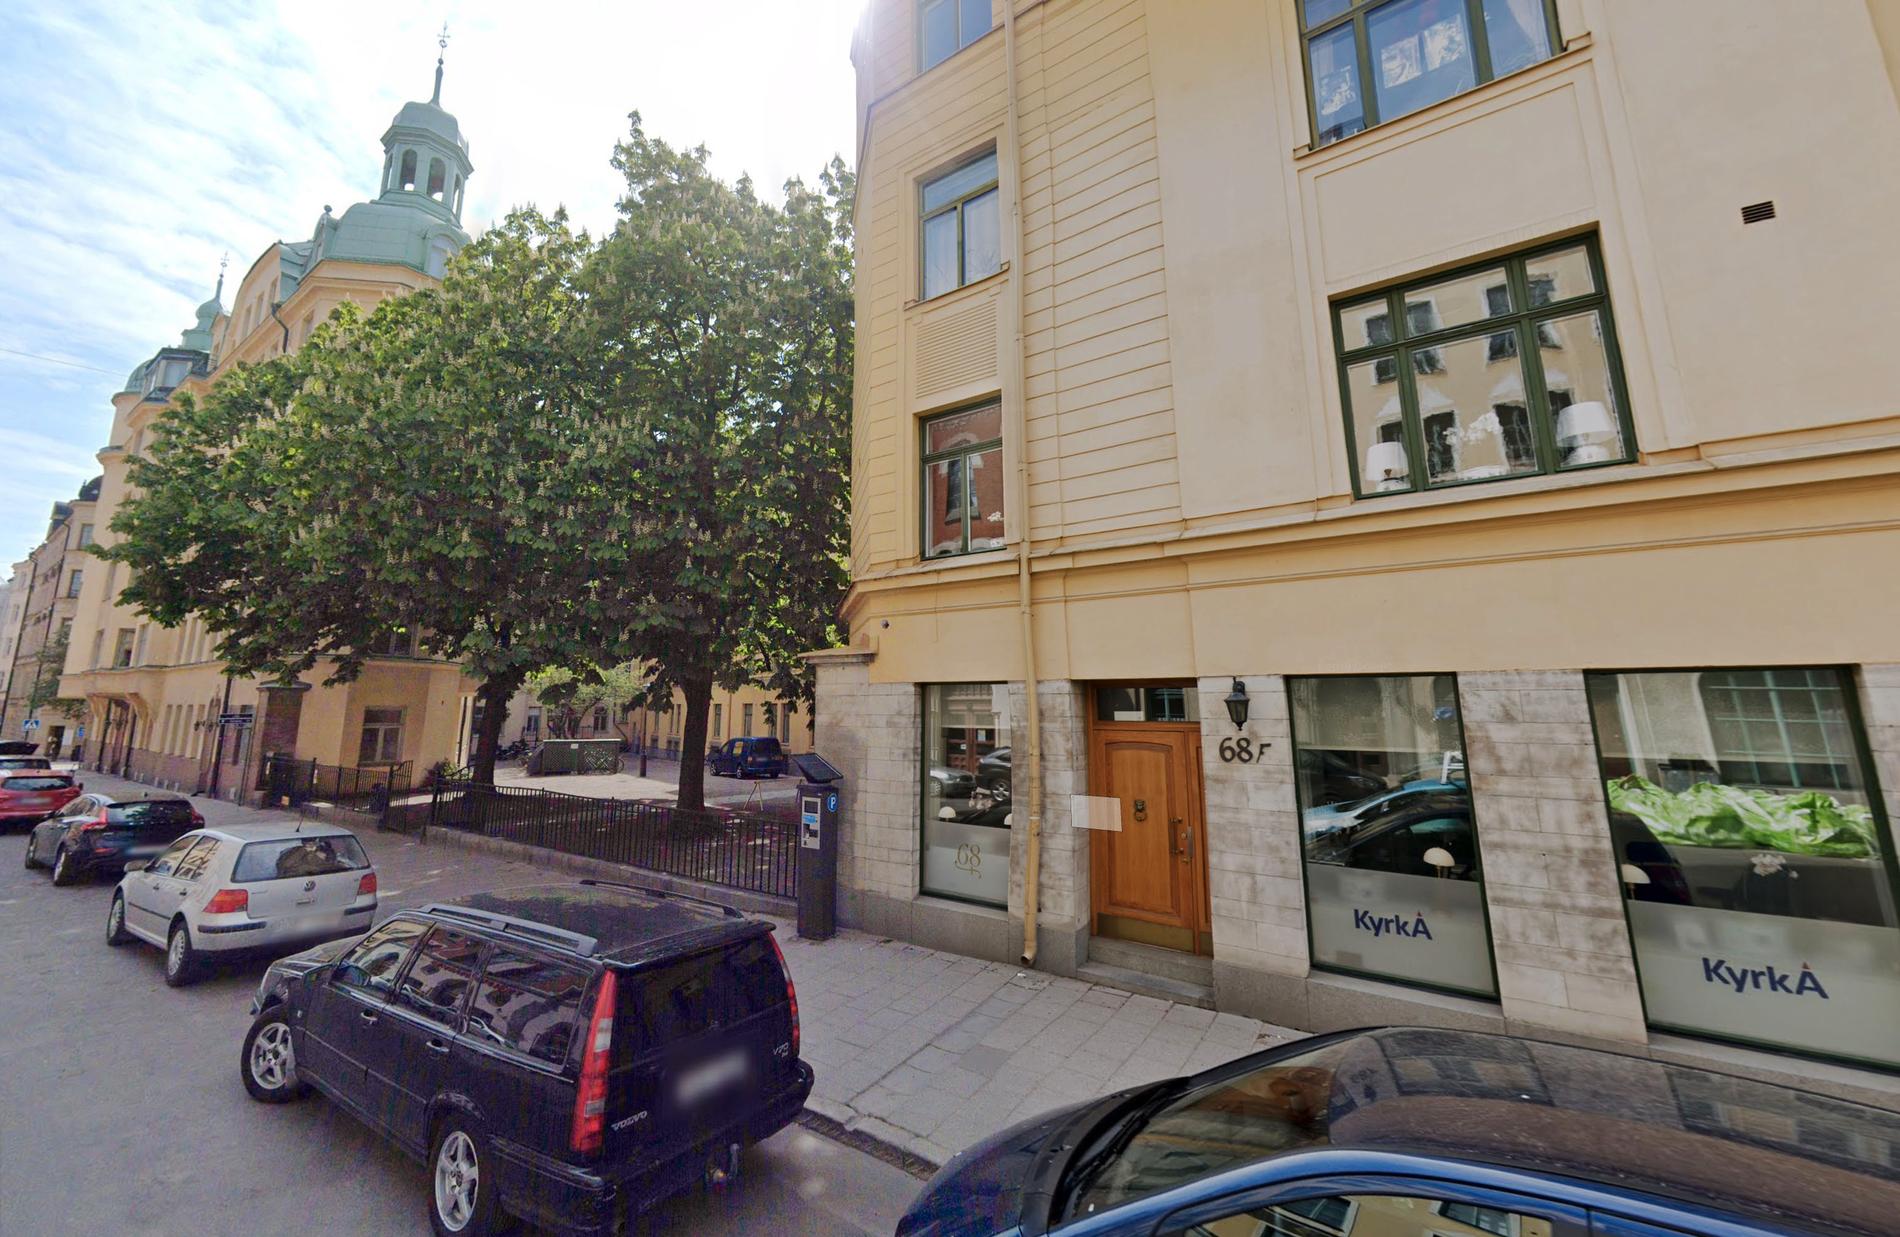 Kyrkans Akademikerförbunds huvudkontor ligger på Östermalm i centrala Stockholm.